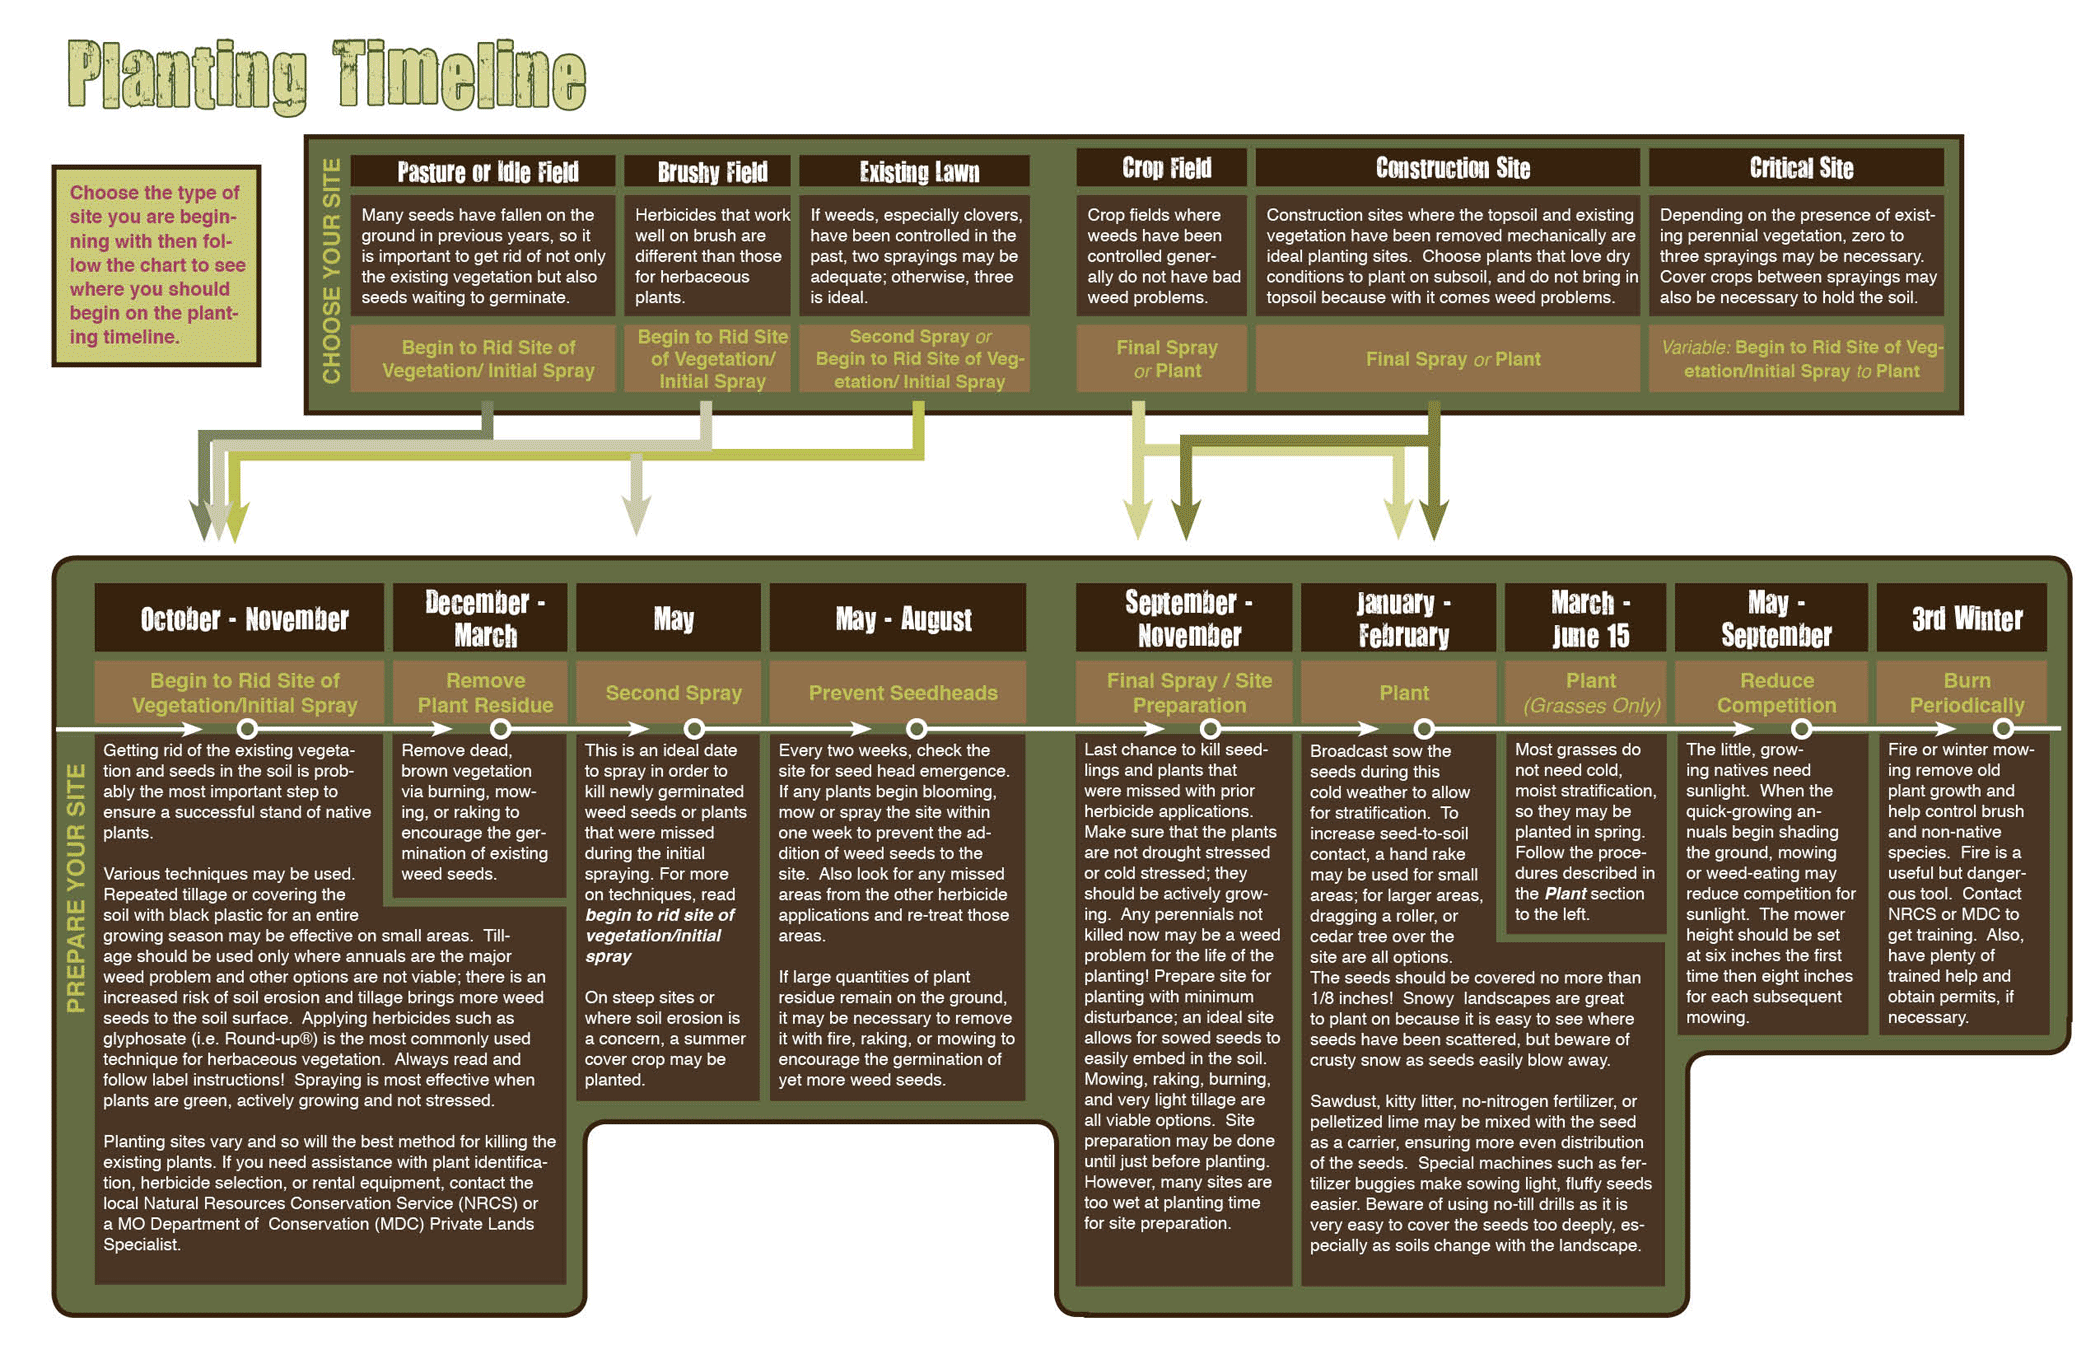 Planting timeline